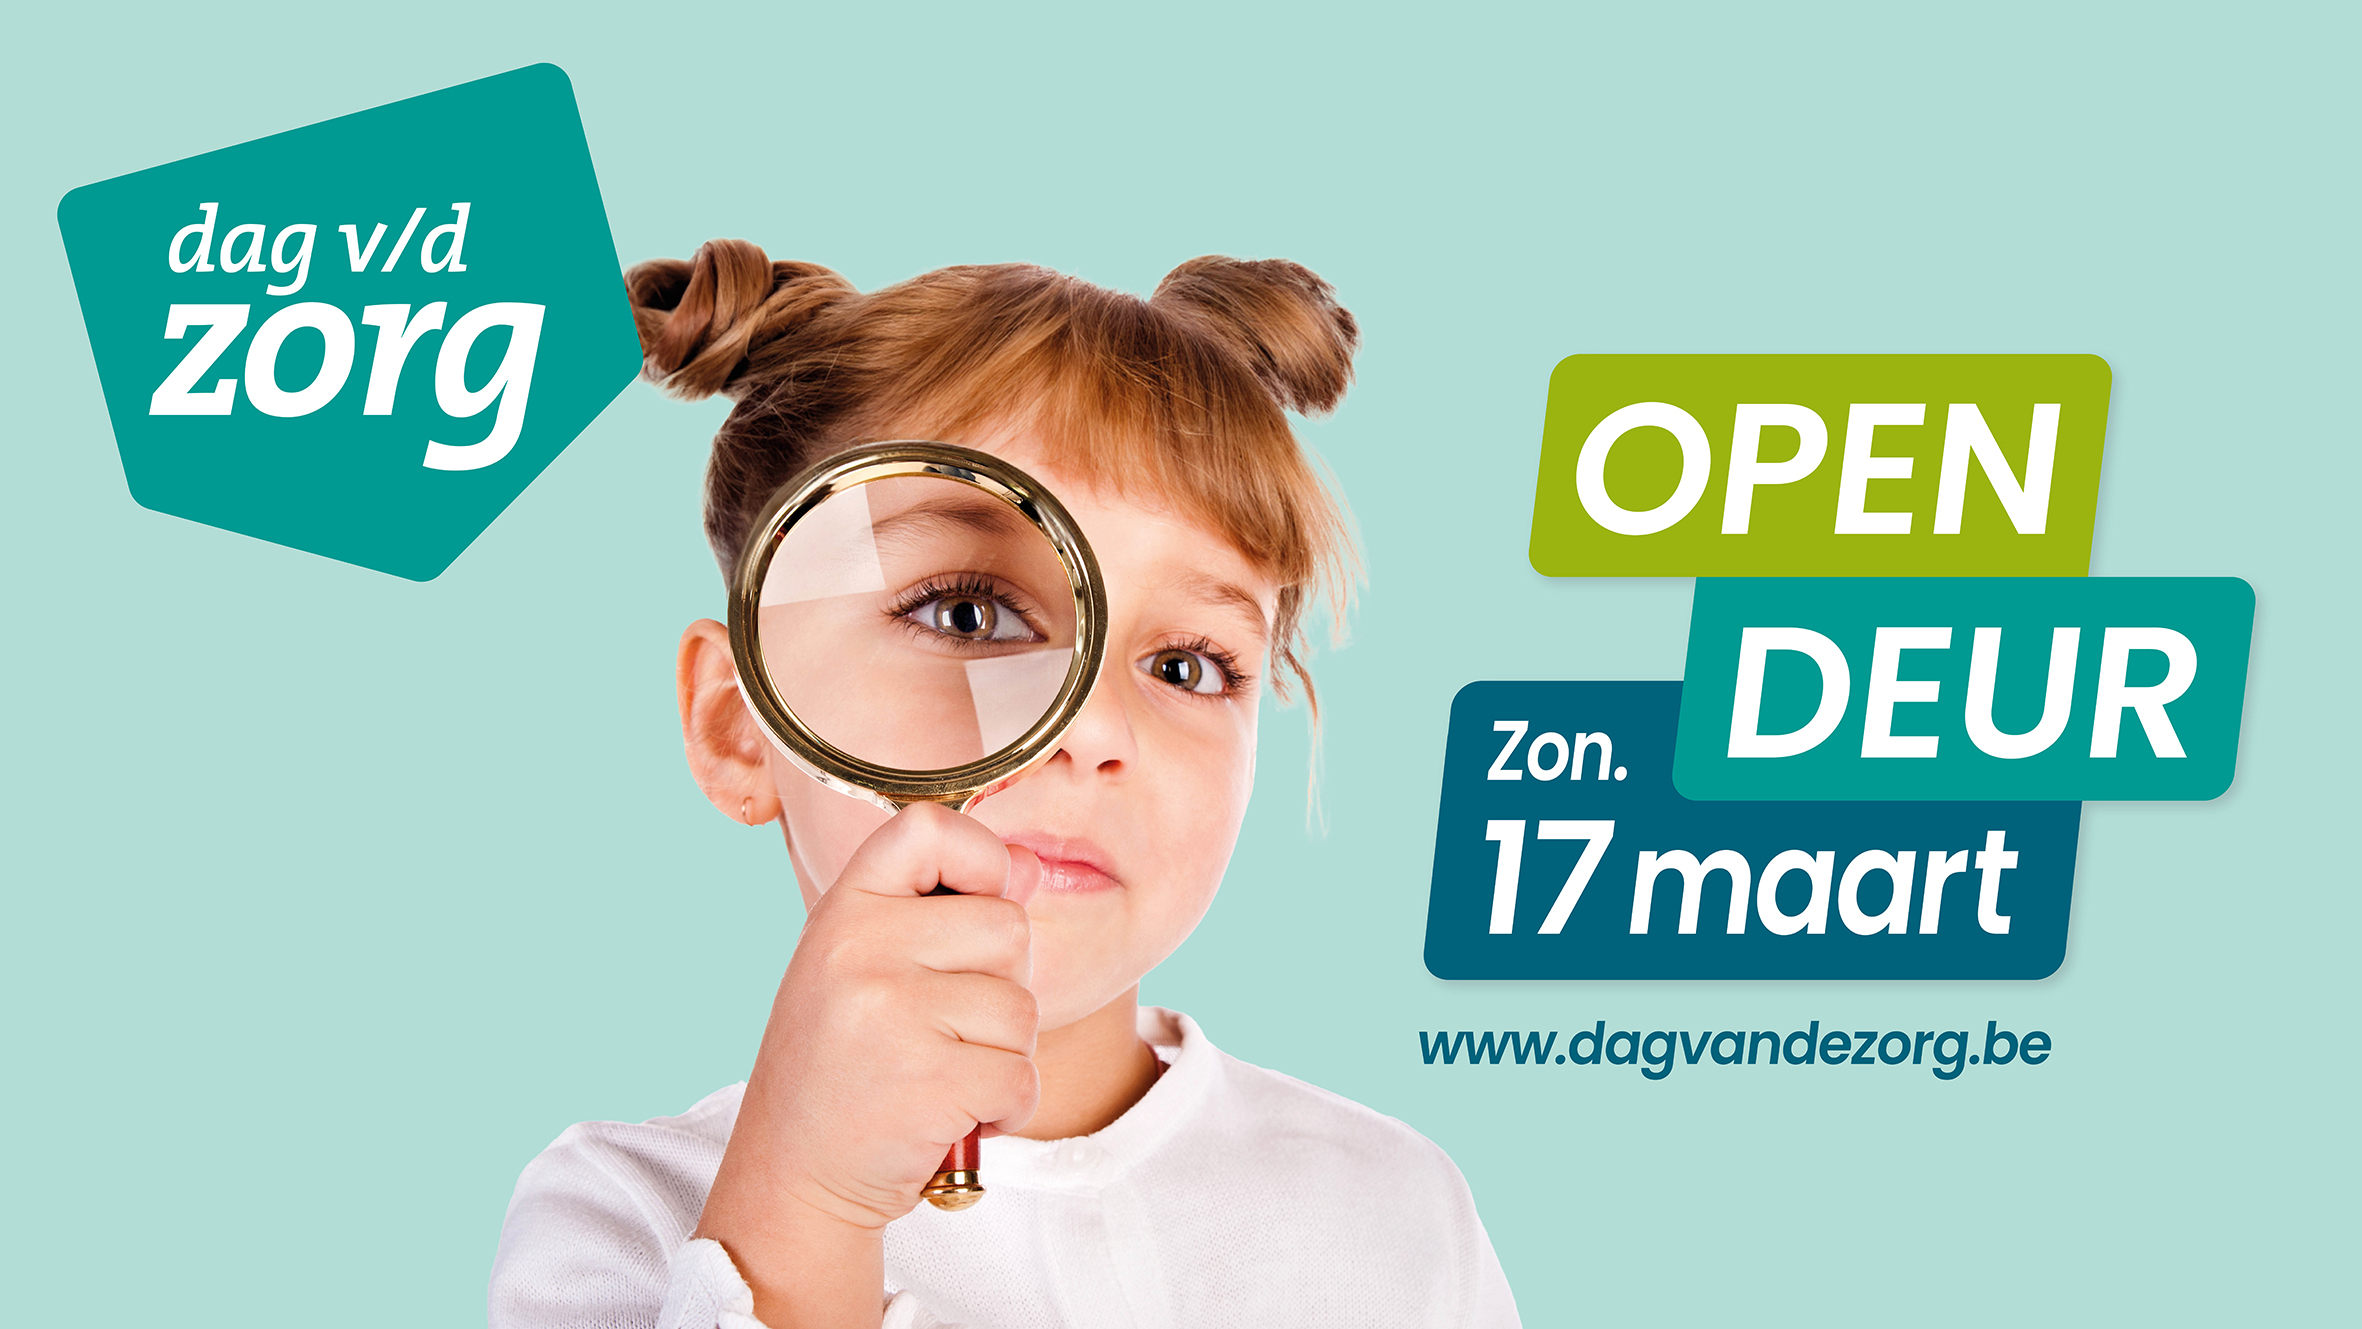 Kom op innovatie-ontdekkingstocht in het UZ Brussel en de VUB! Schrijf je nu in voor de Dag van de Zorg op zondag 17 maart